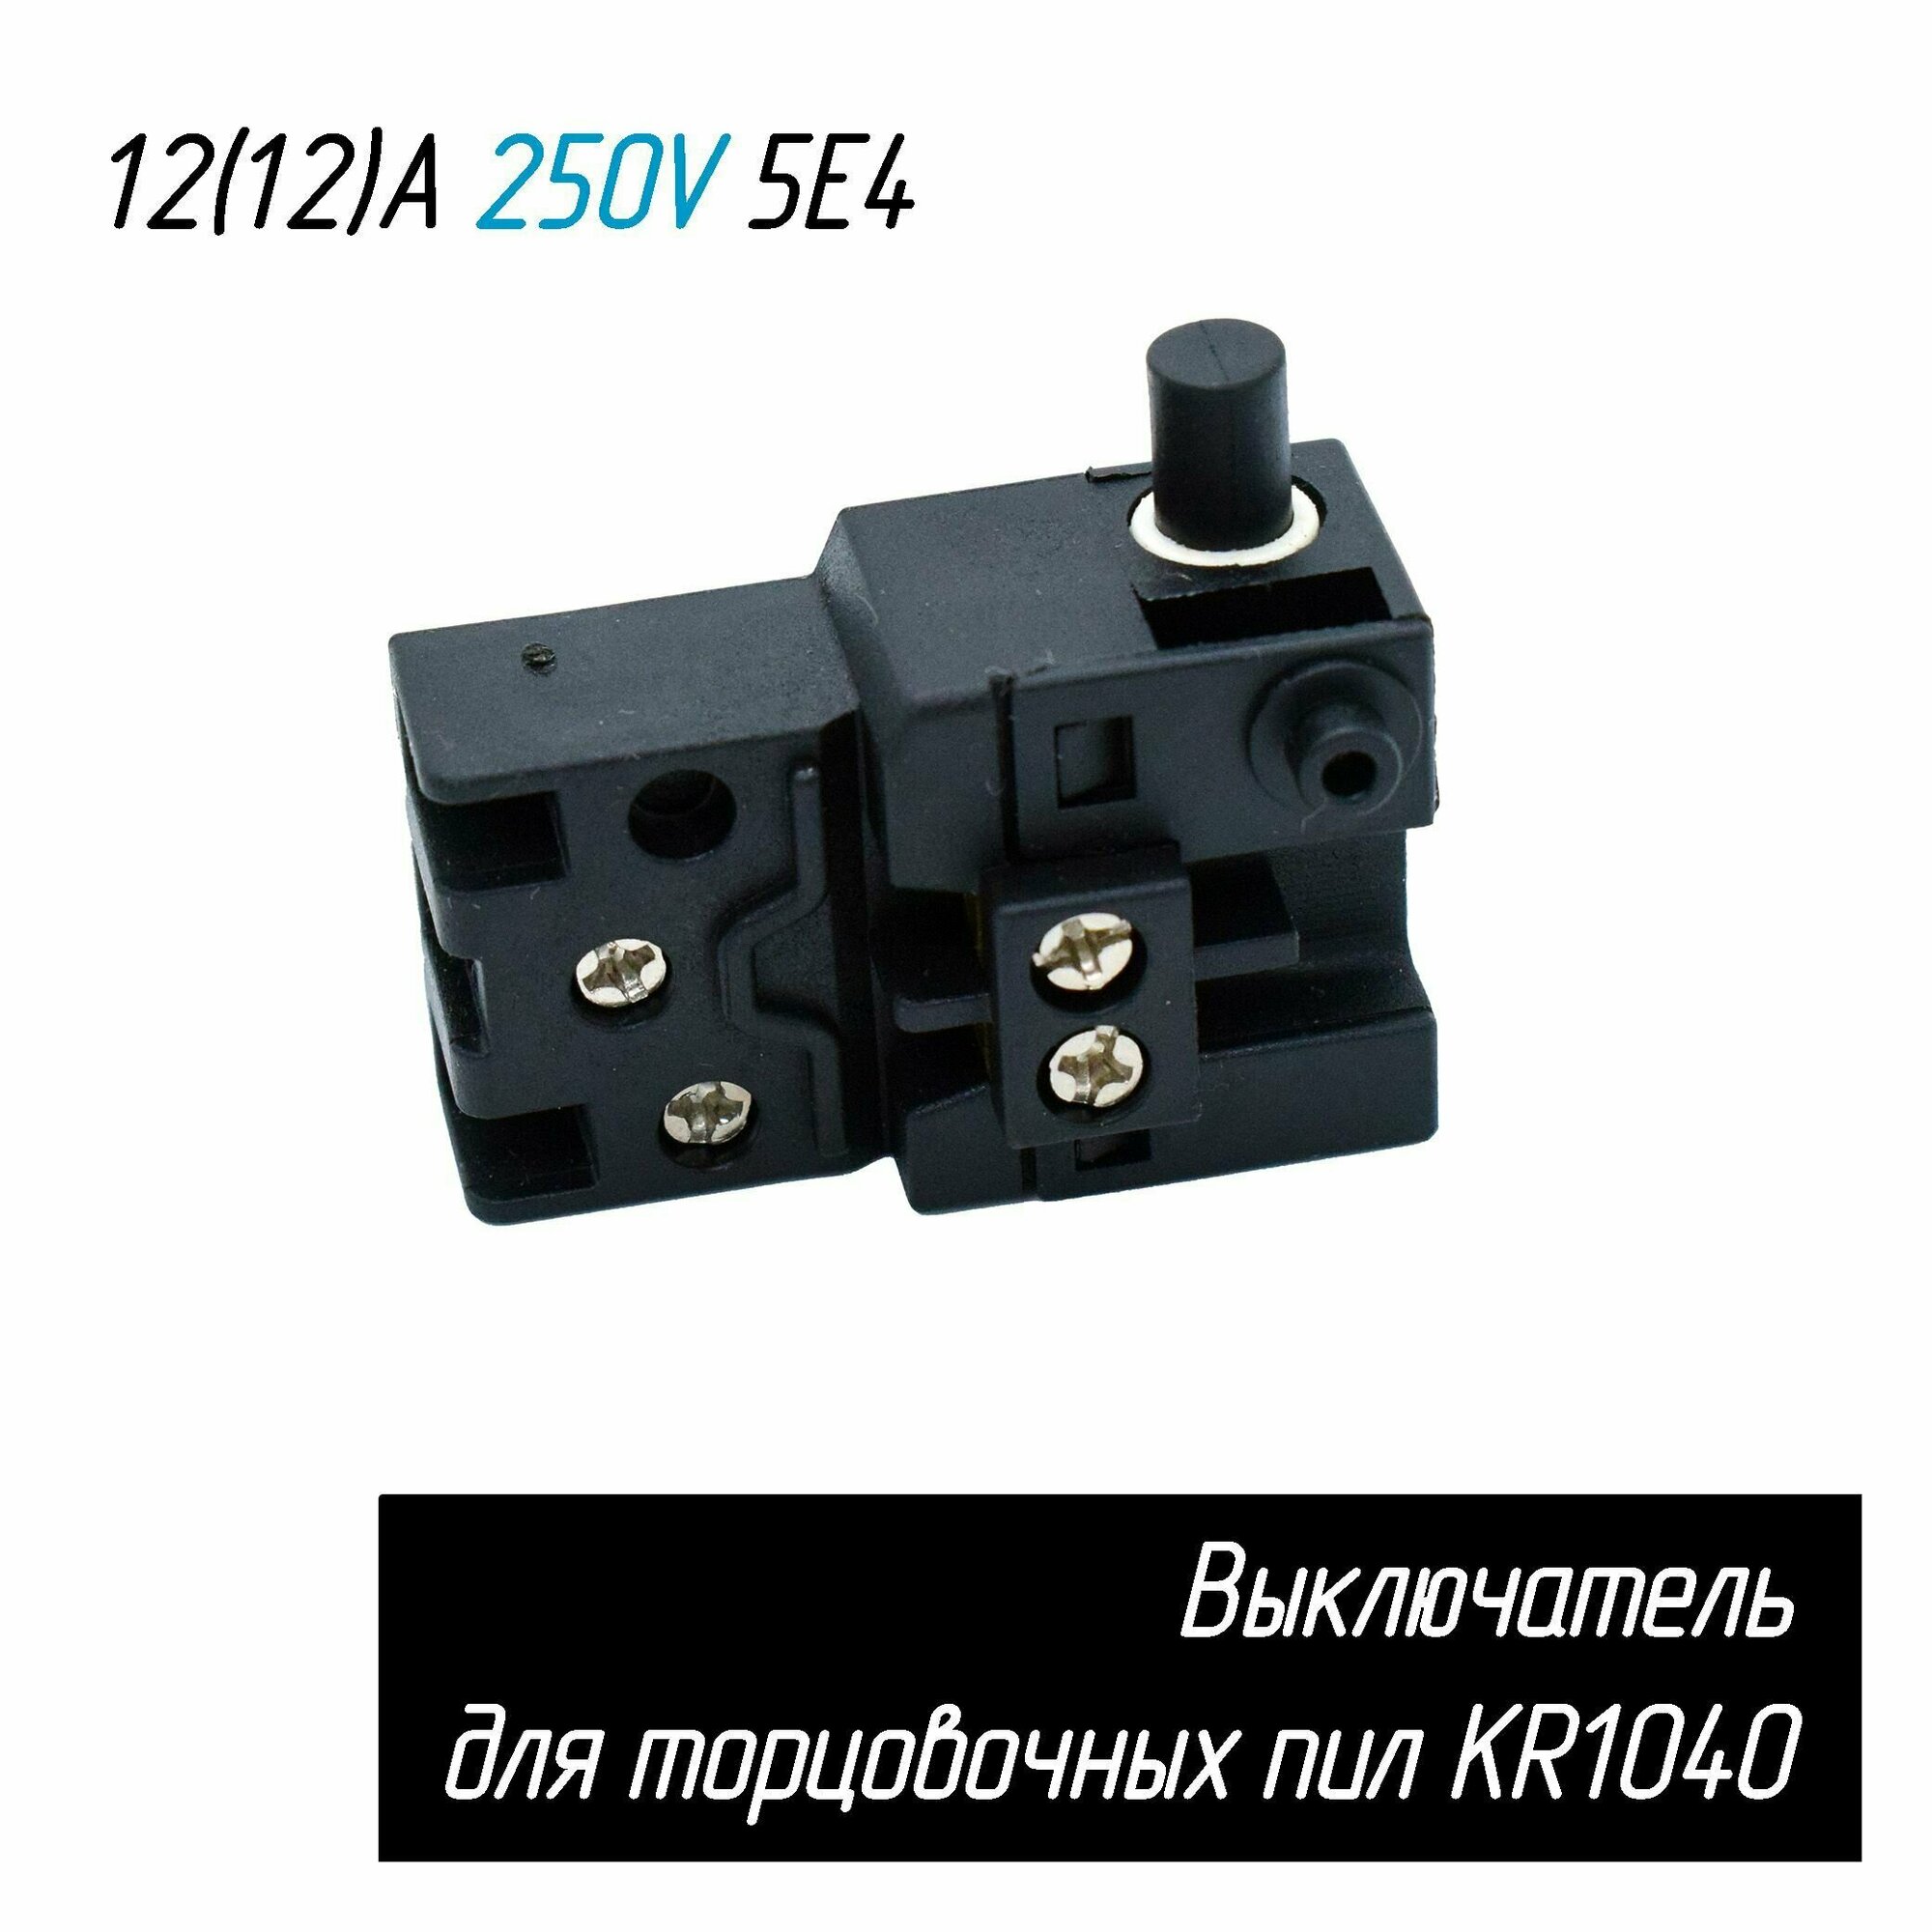 Выключатель KR1040 12(12)A 250V 5E4 для торцовочных пил 4 контакта (ЗУБР ЗПТ-255-1800 ПЛР, Корвет 2, 4 Энкор и др.) AEZ